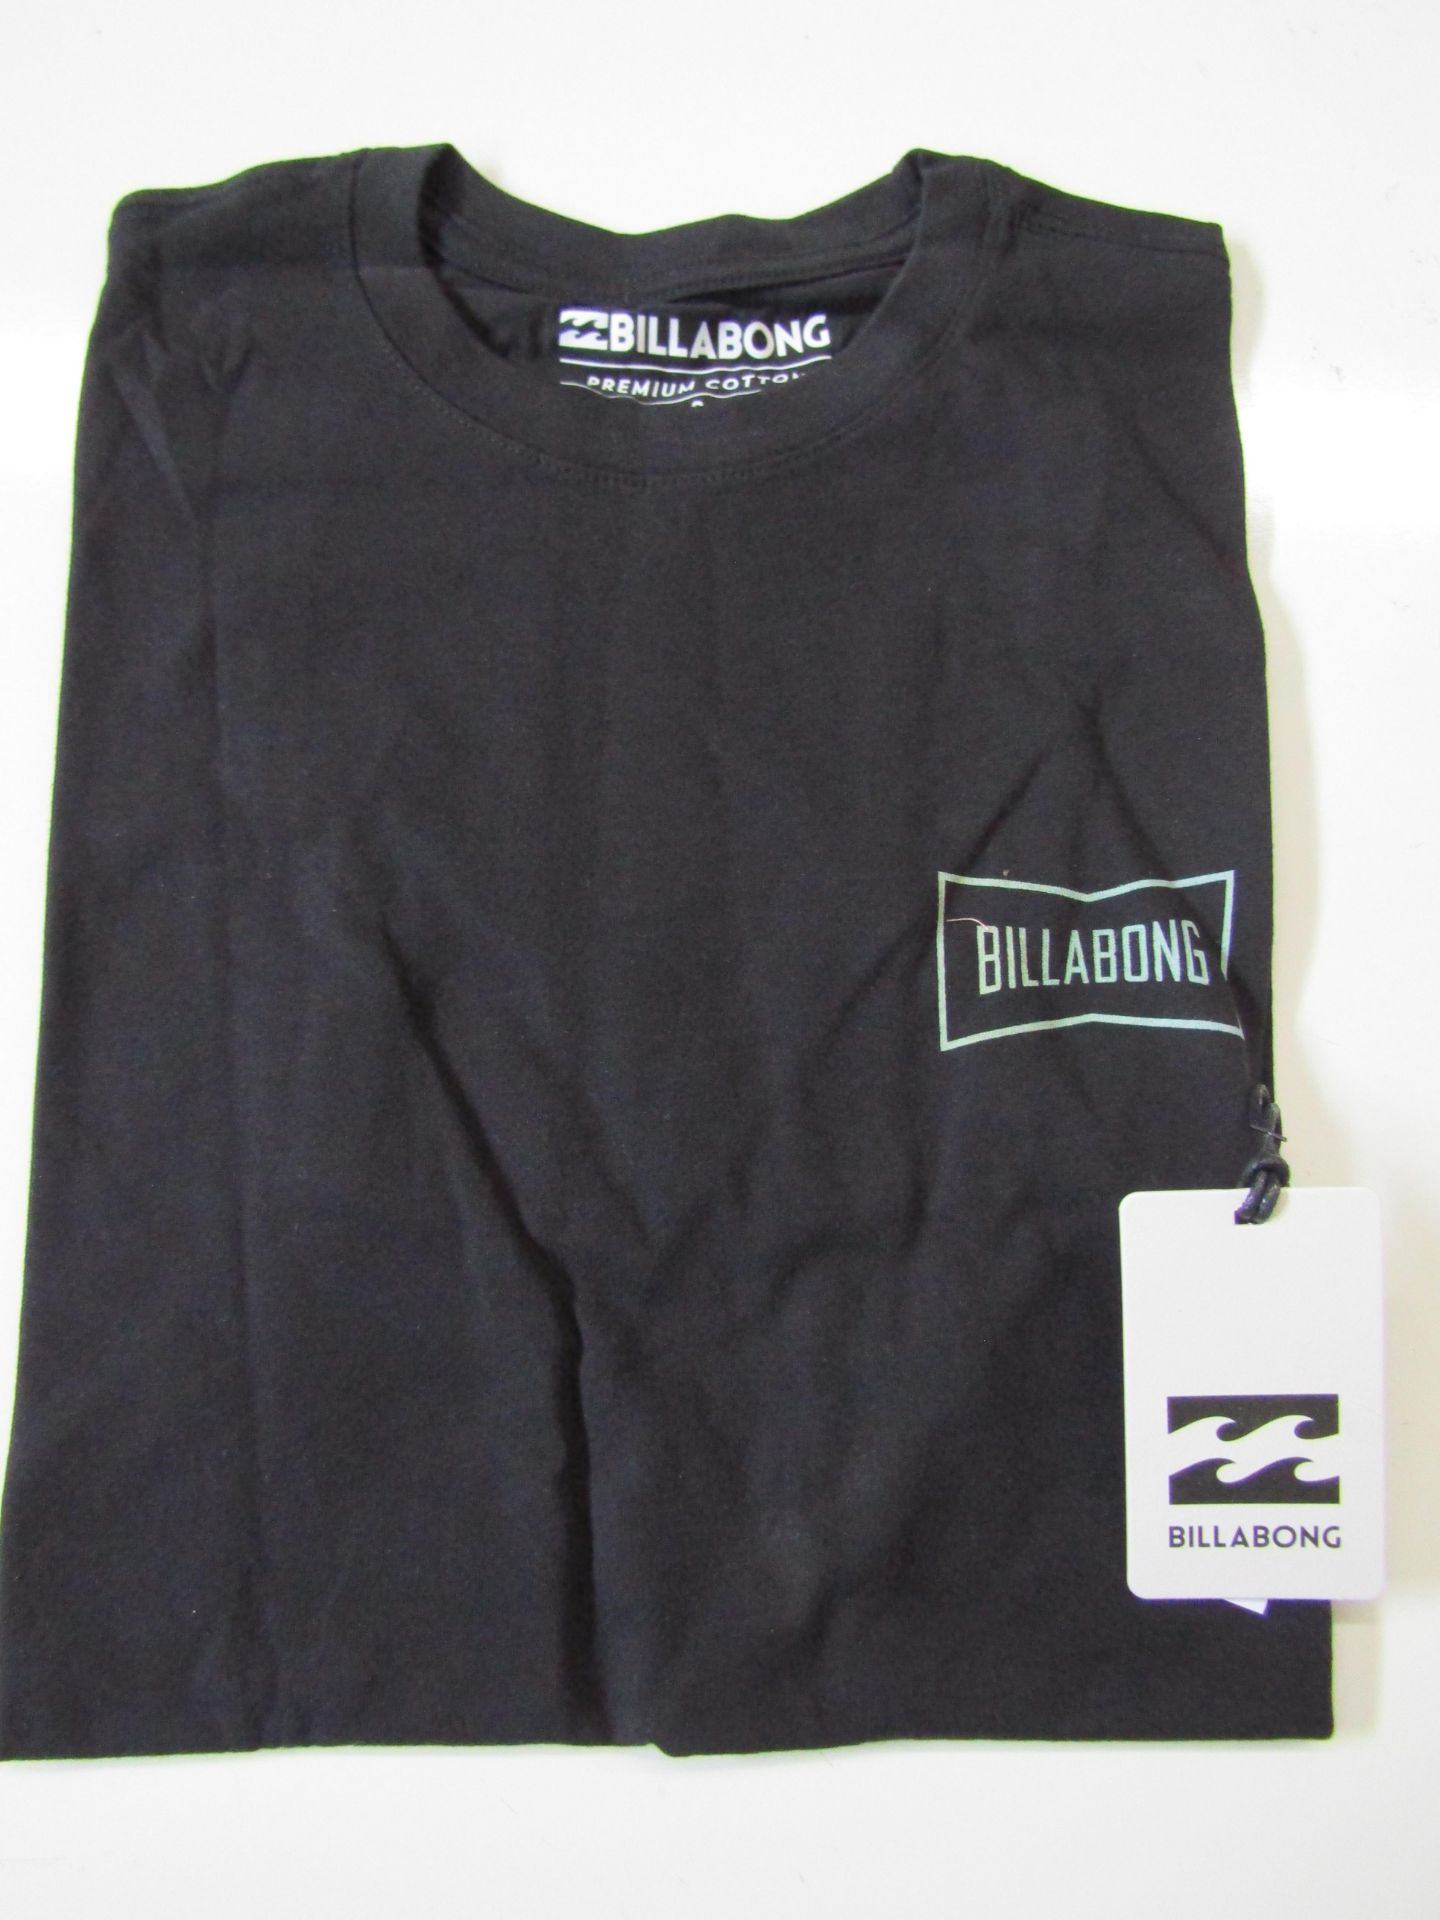 Billabong T/Shirt Black Size M New & Packaged